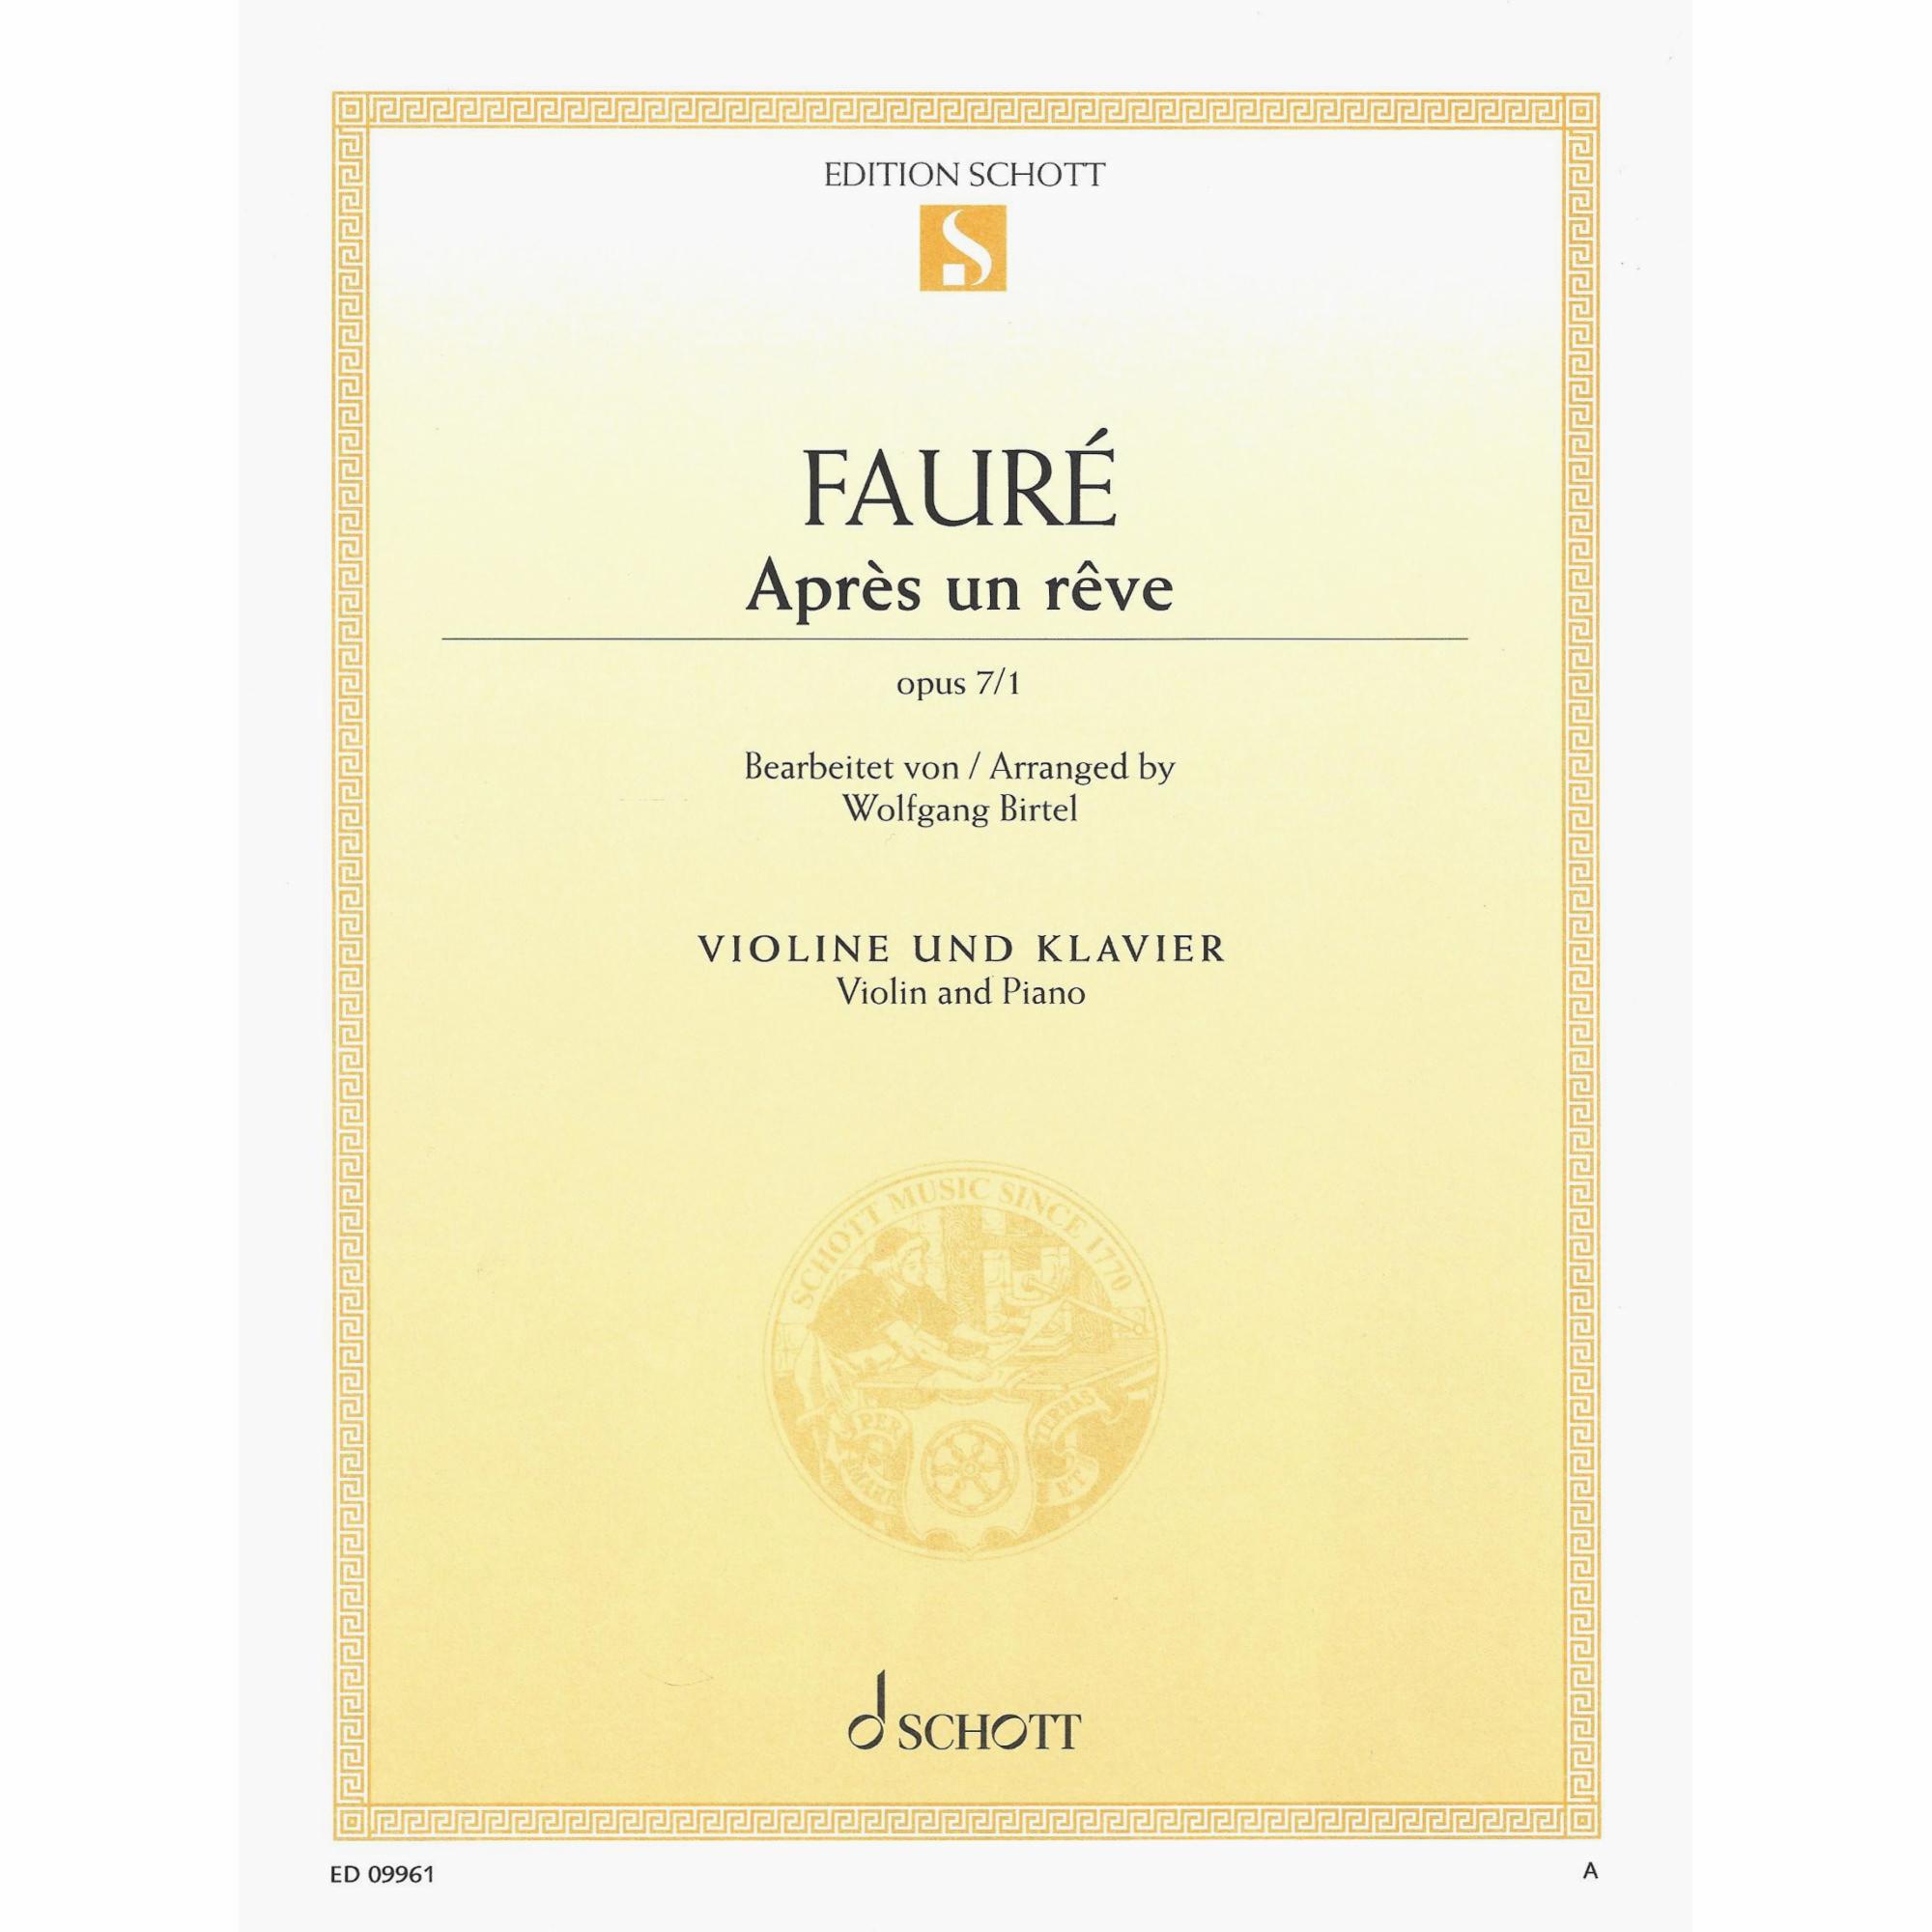 Faure -- Apres un reve, Op. 7, No. 1 for Violin and Piano